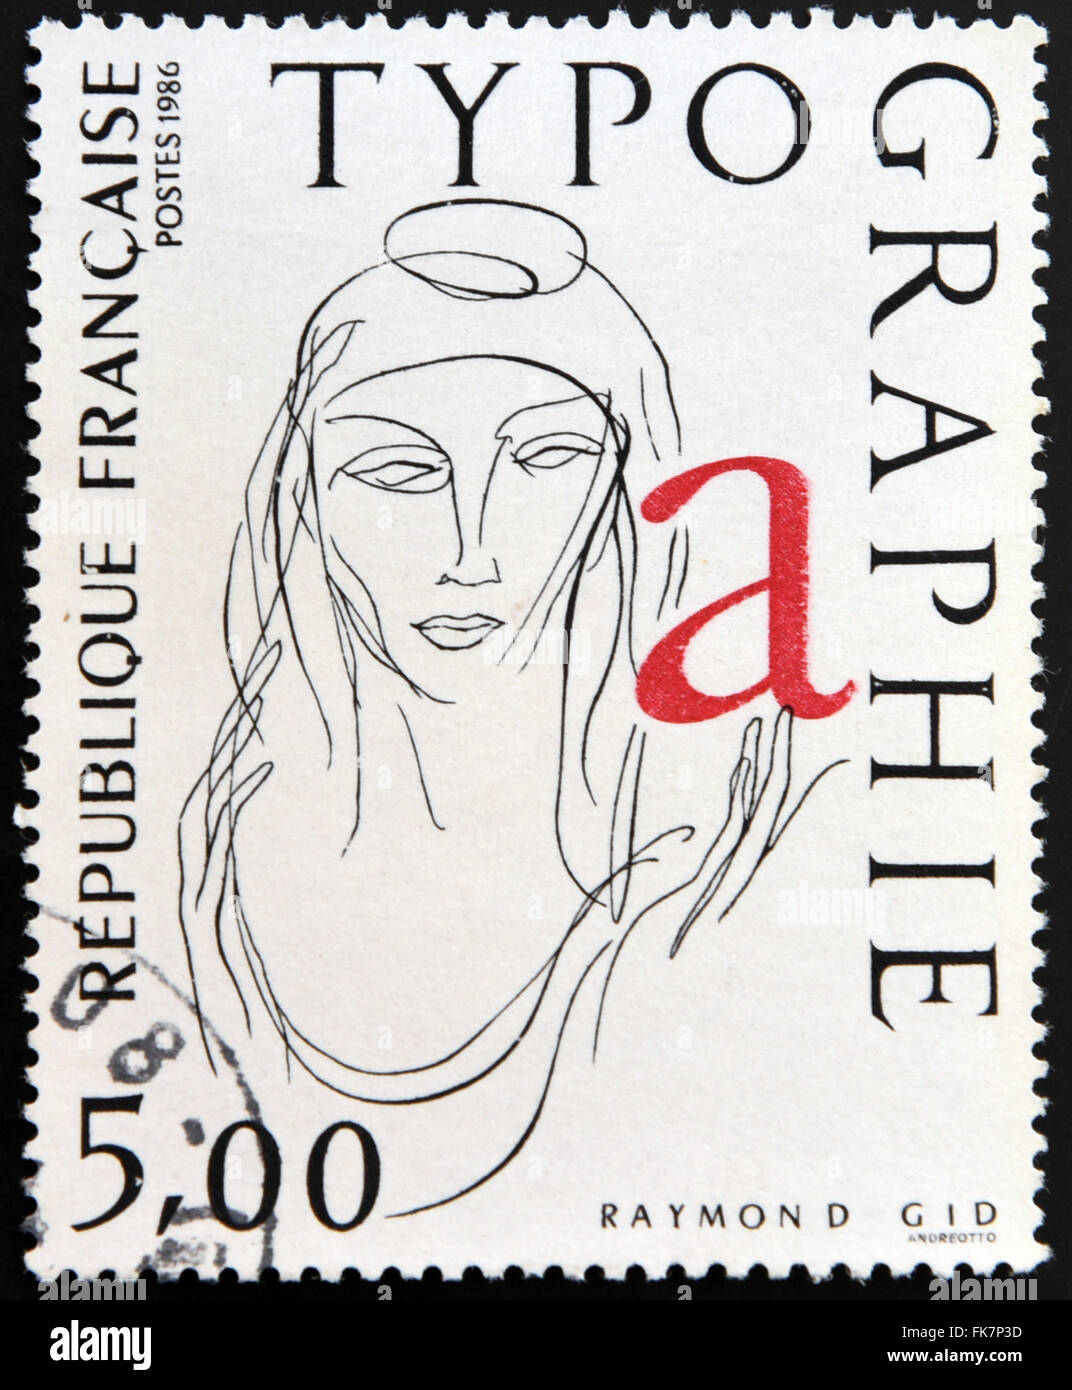 FRANCE - VERS 1986 : un timbre imprimé en France montre la Marianne, Typograph par Raymond gid, vers 1986 Banque D'Images